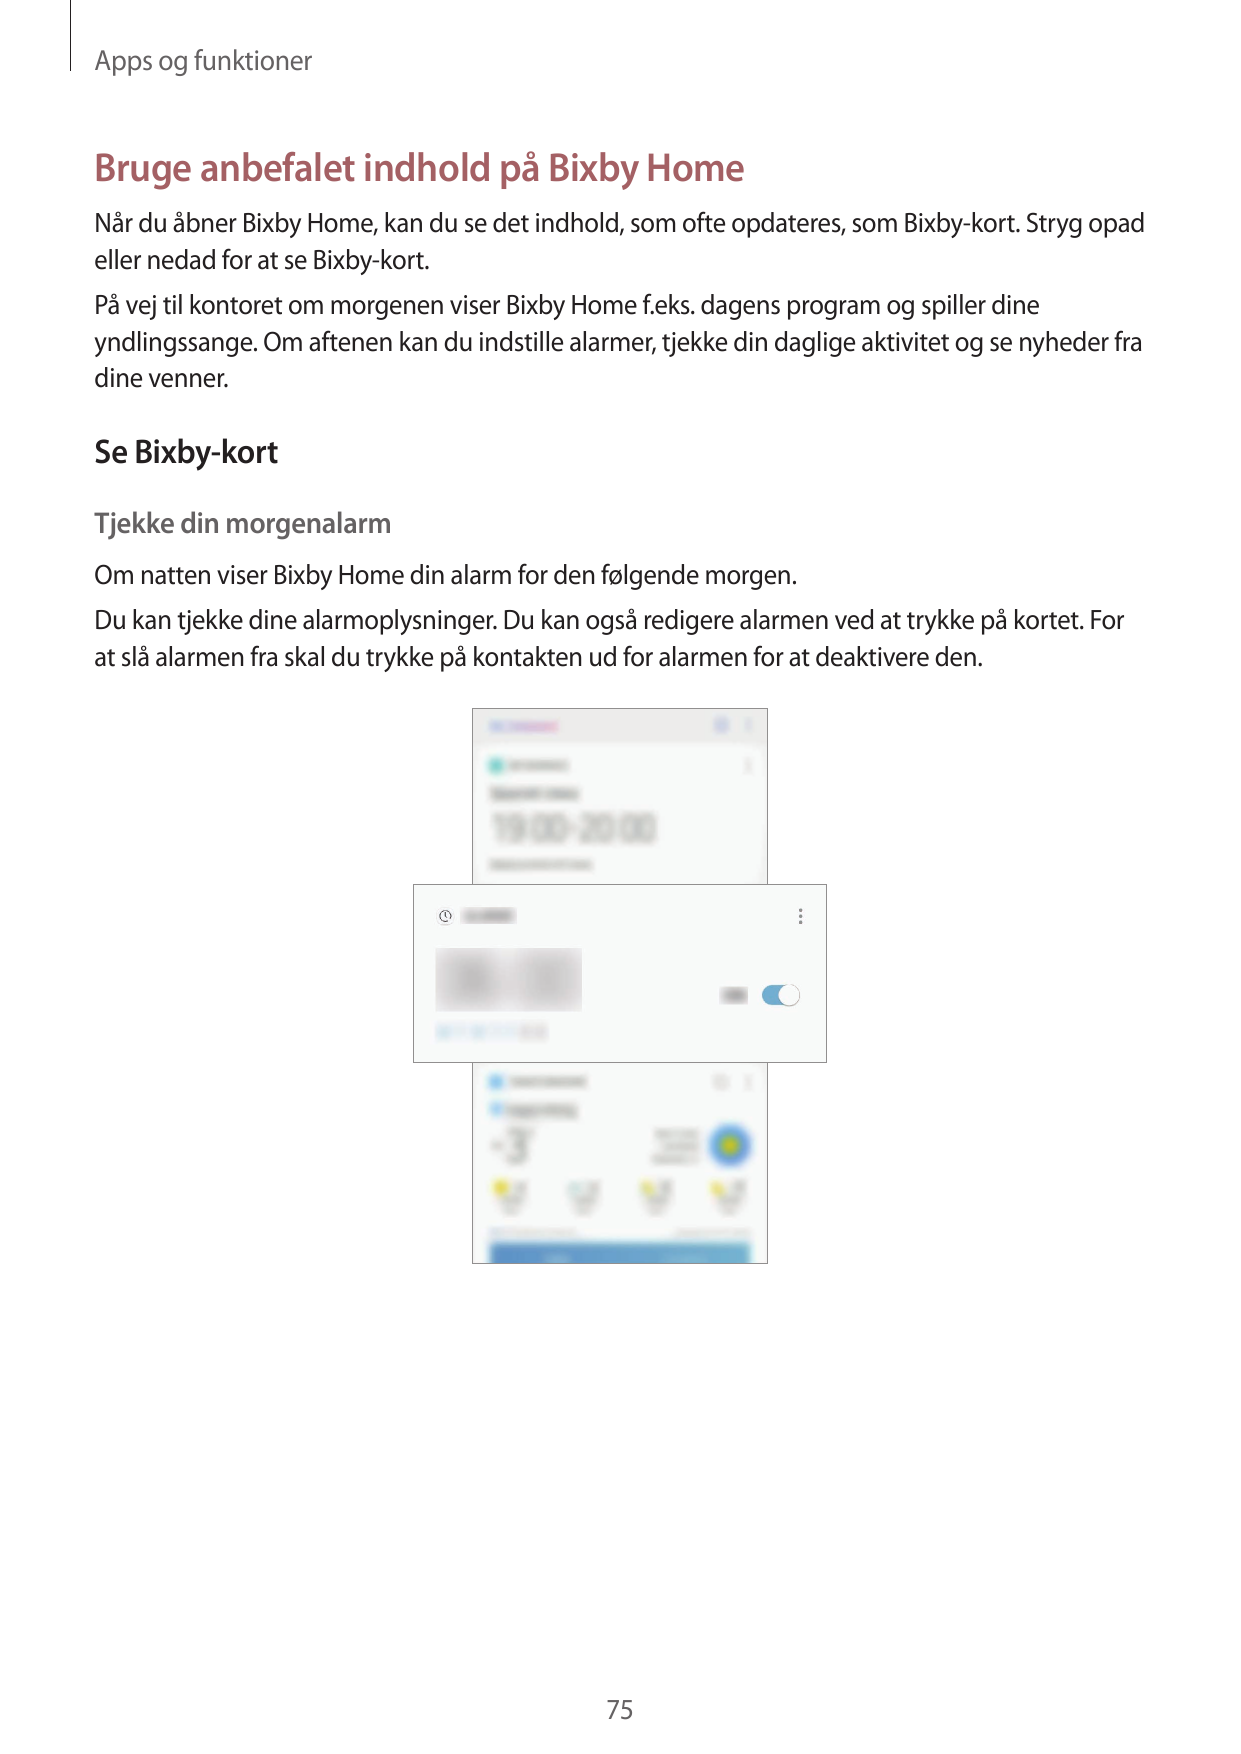 Apps og funktionerBruge anbefalet indhold på Bixby HomeNår du åbner Bixby Home, kan du se det indhold, som ofte opdateres, som B